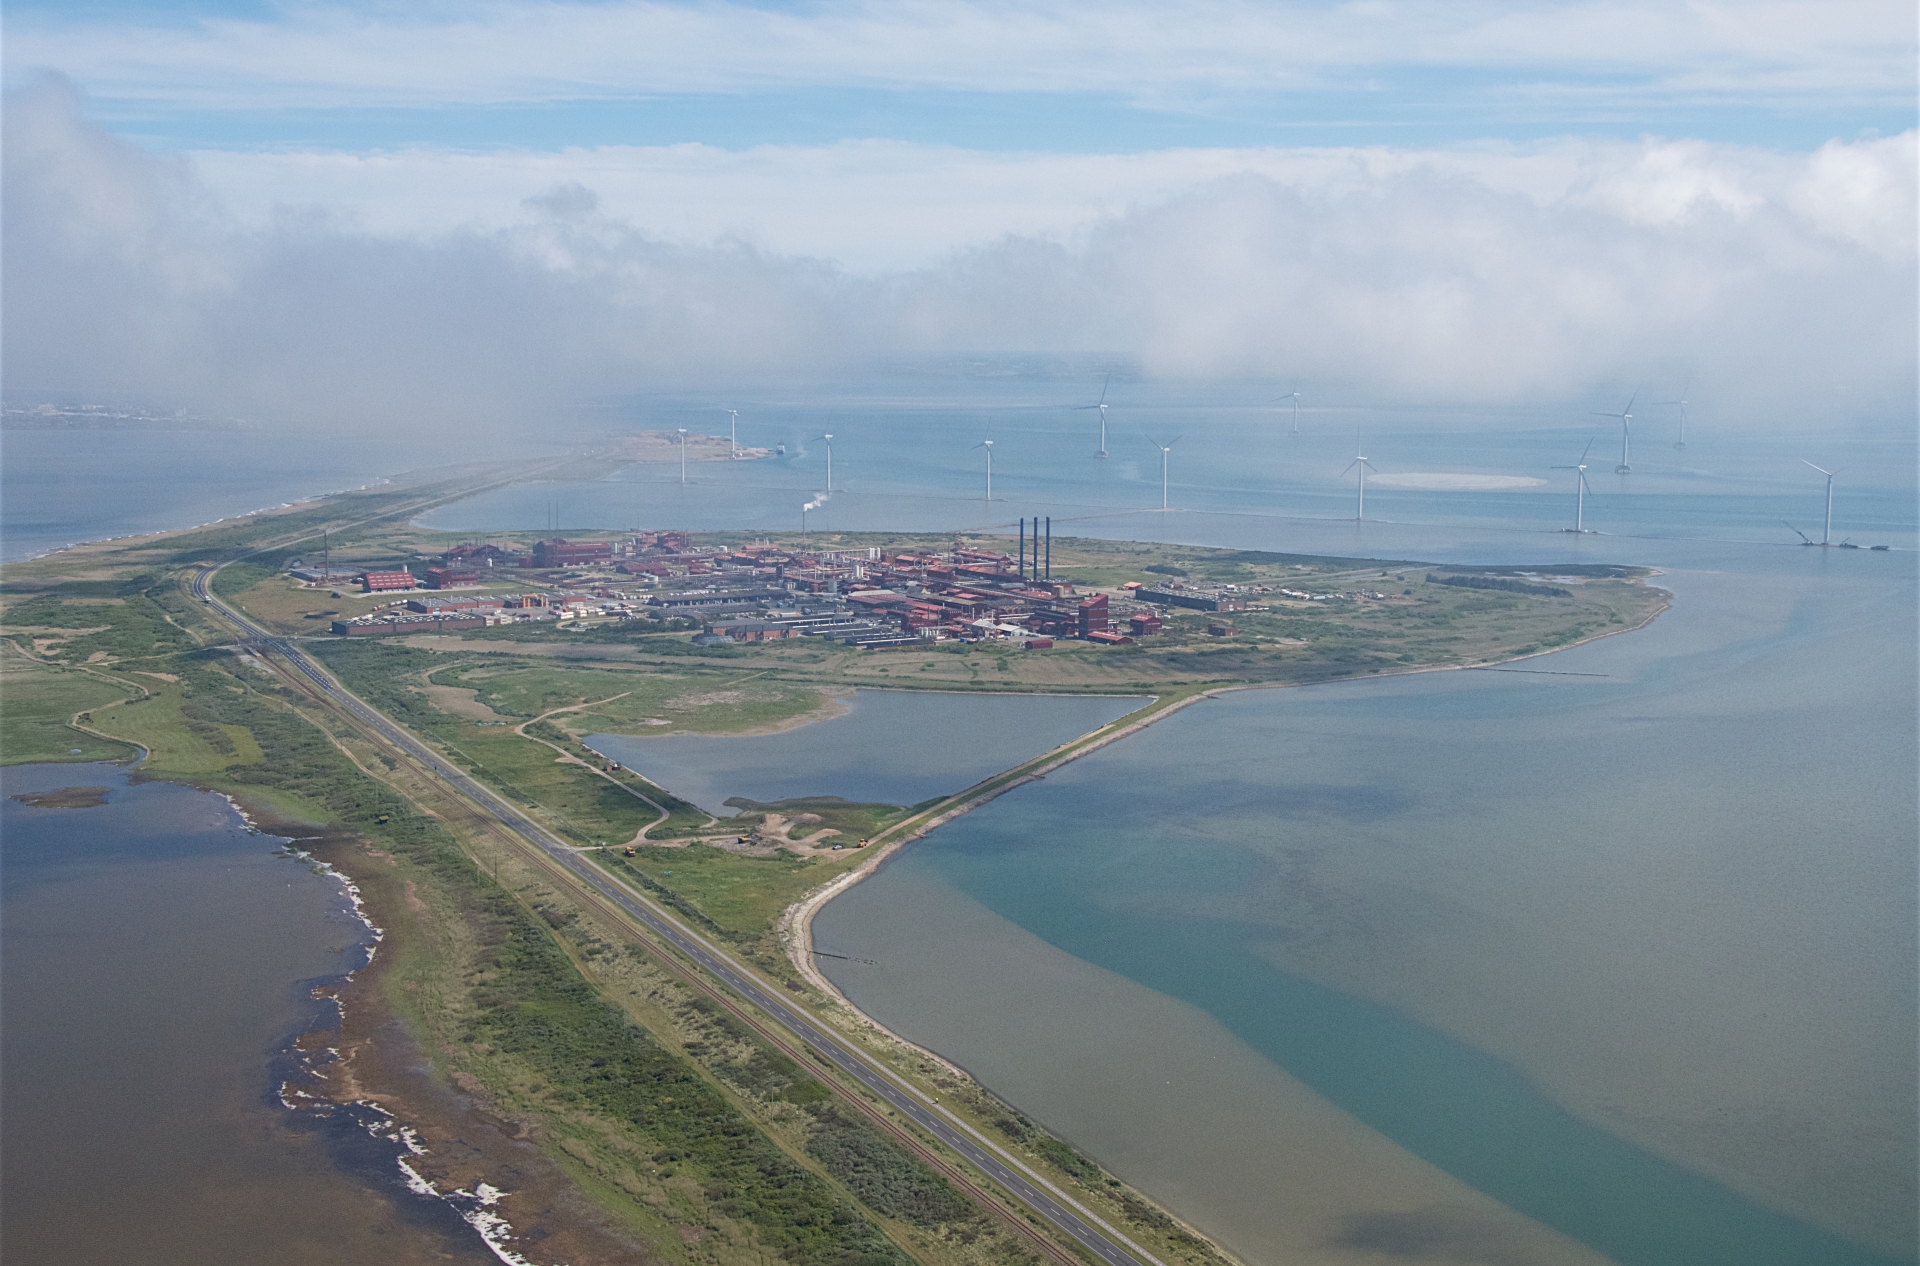 Luftfoto over Rønland fra 2019 med den gamle fabriksgrund i forgrunden. Foto: Region Midtjylland (Torsten Christensen)